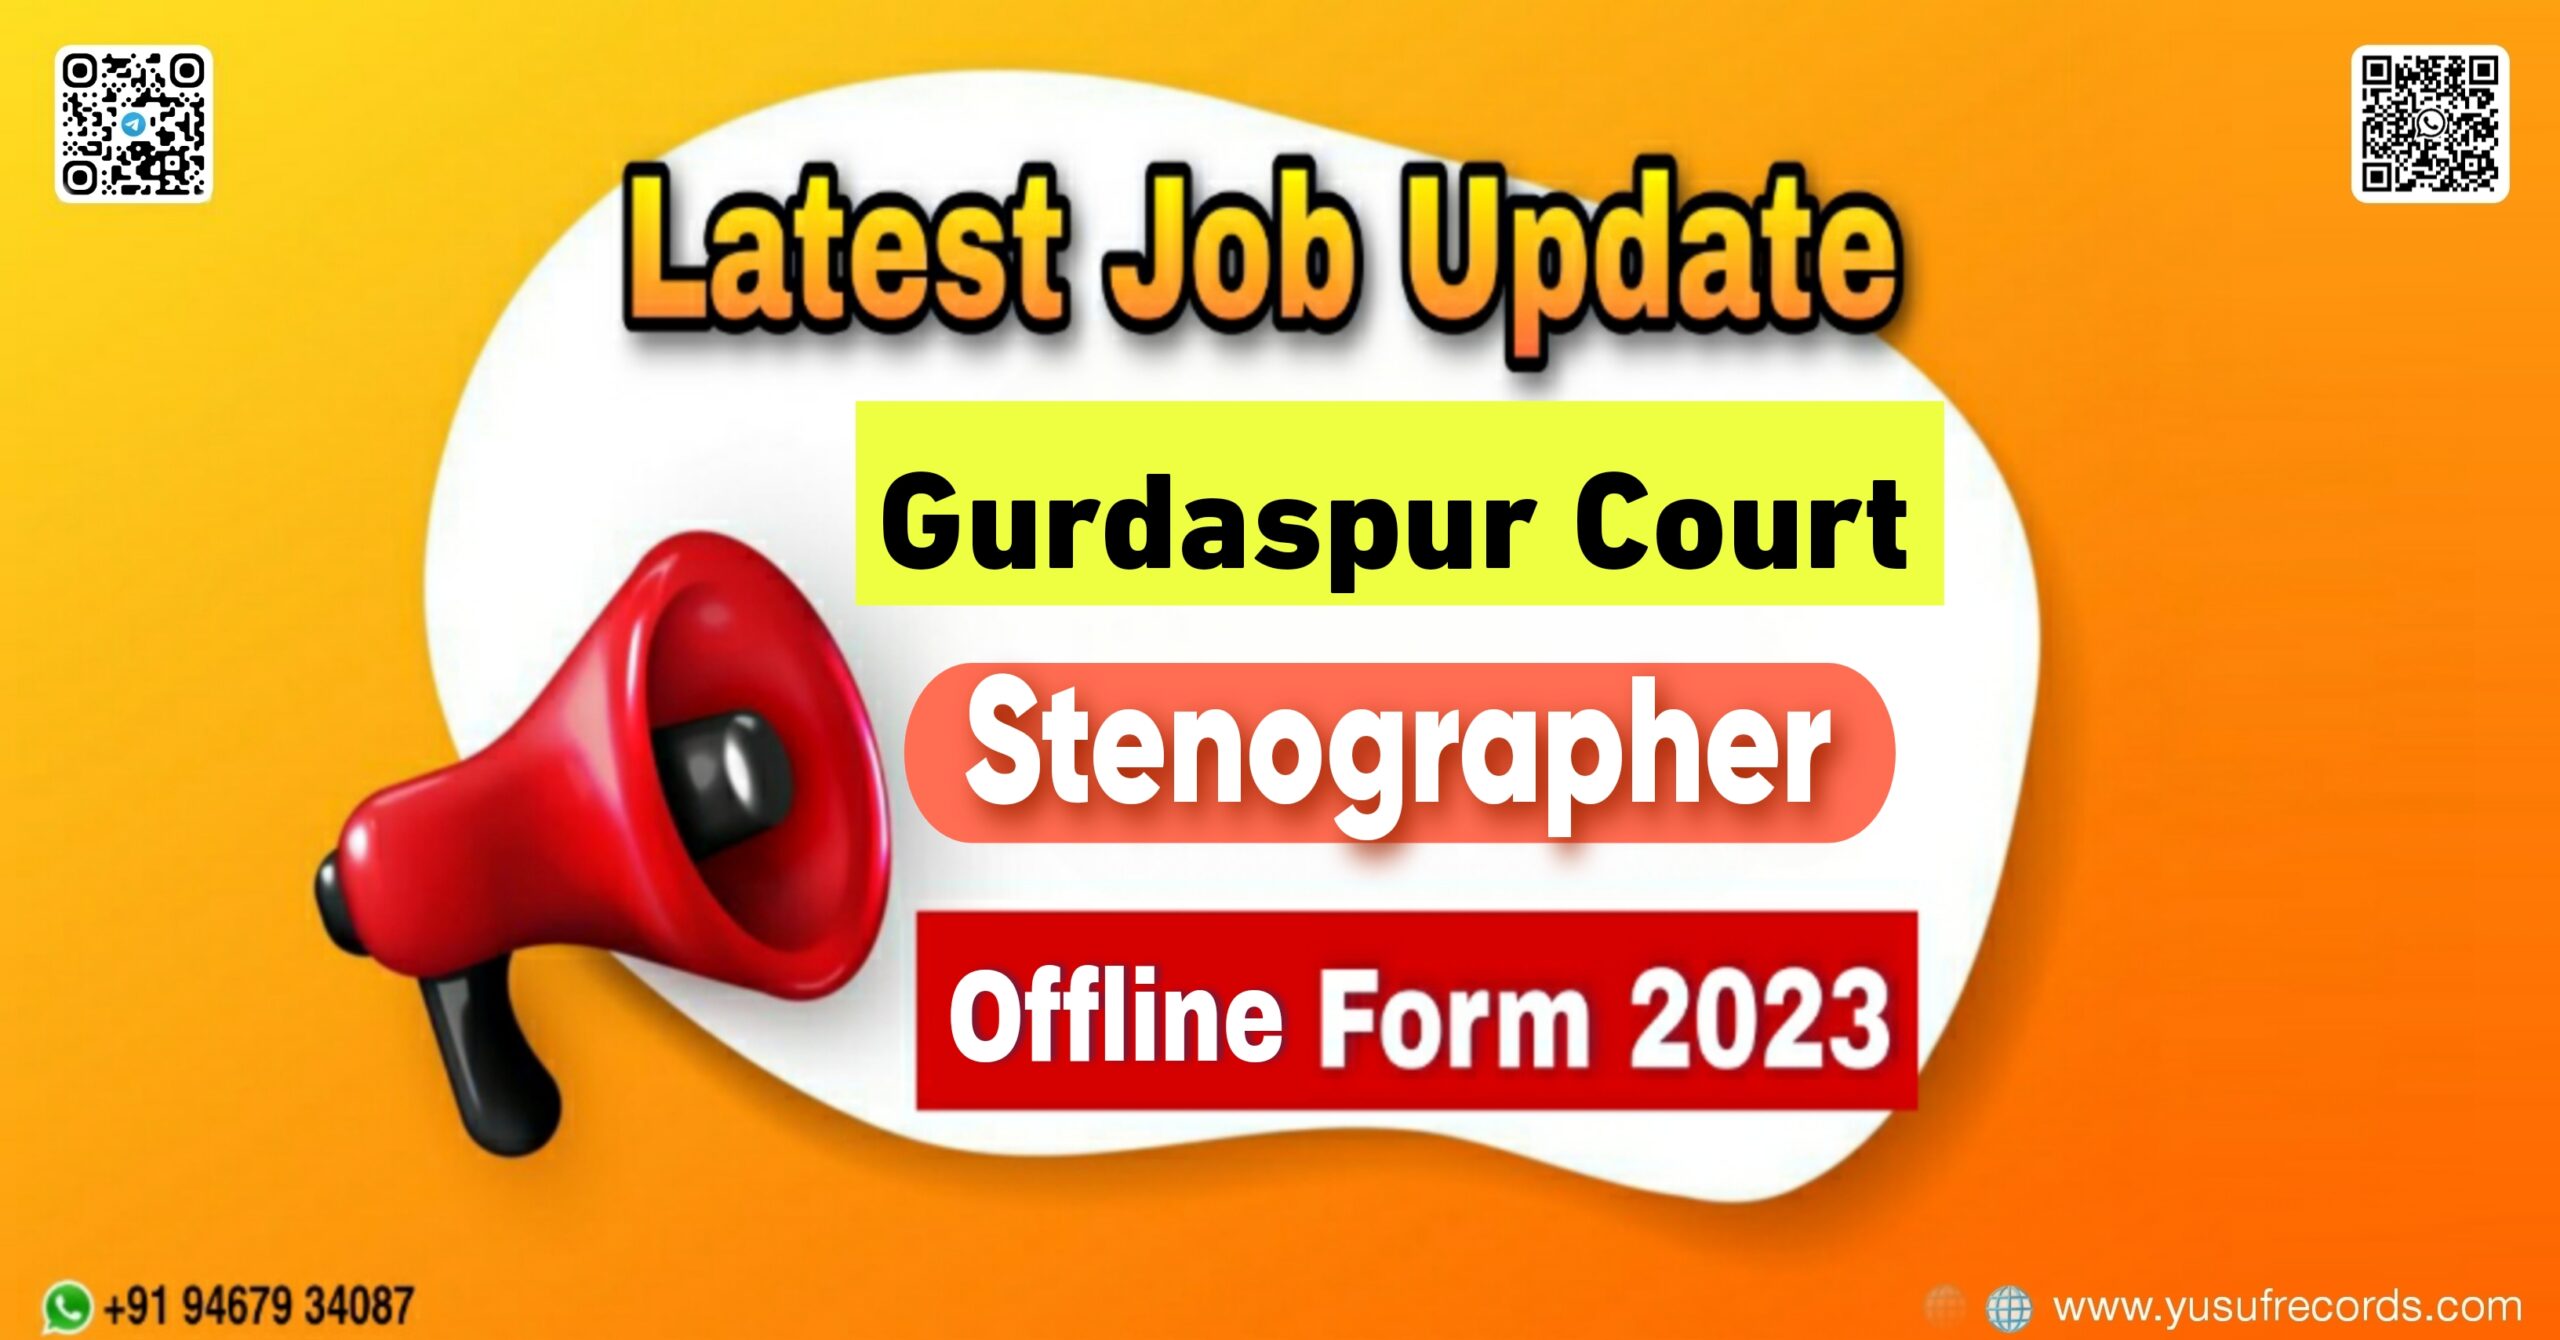 Gurdaspur Court Stenographer Offline Form yusufrecords